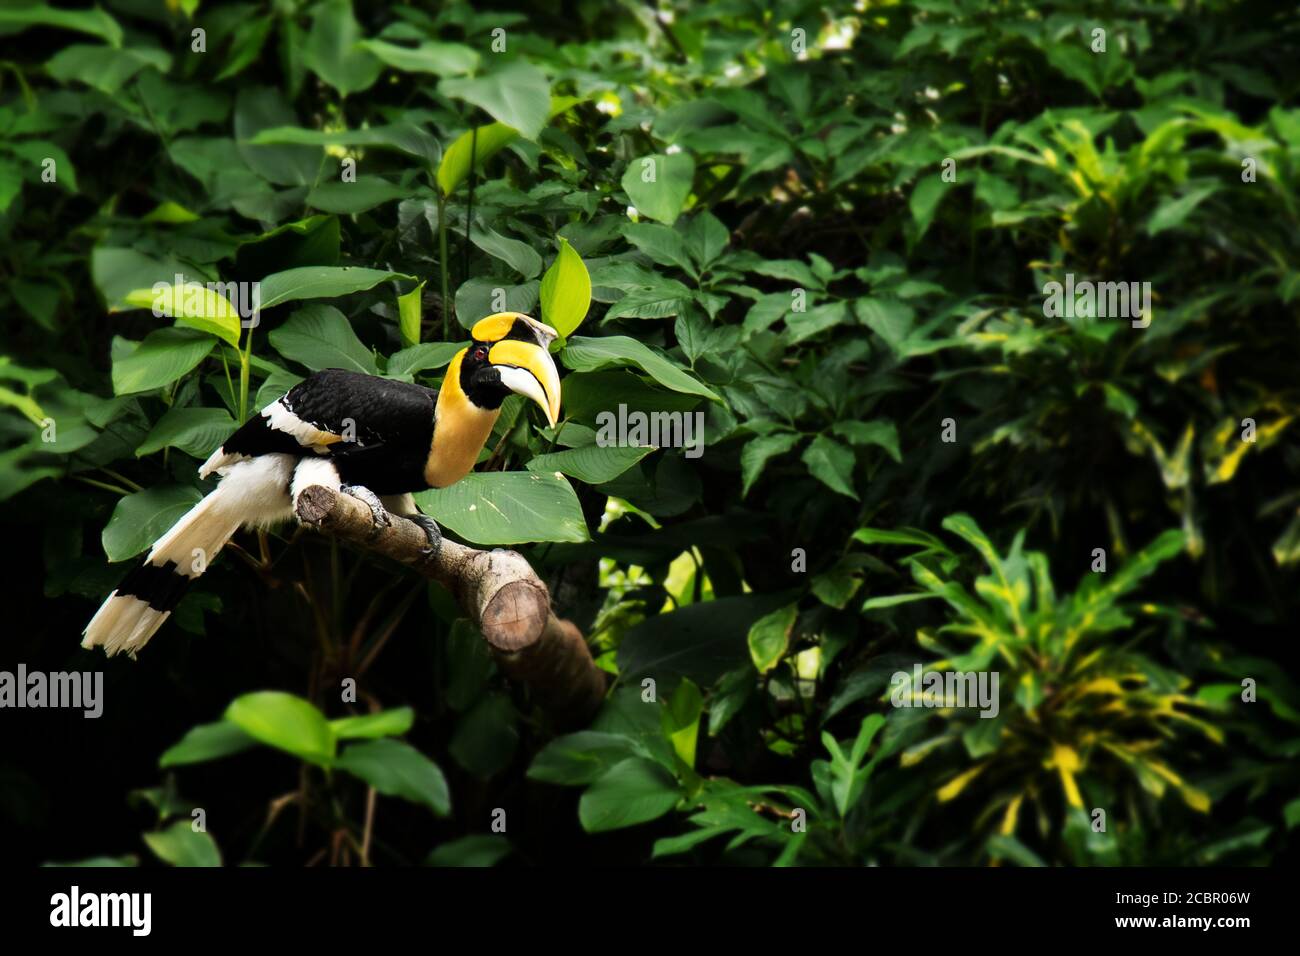 Hornbill à bec jaune, grand charme, grand charme indien, grand charme à pied dans la forêt tropicale à thème vert Banque D'Images